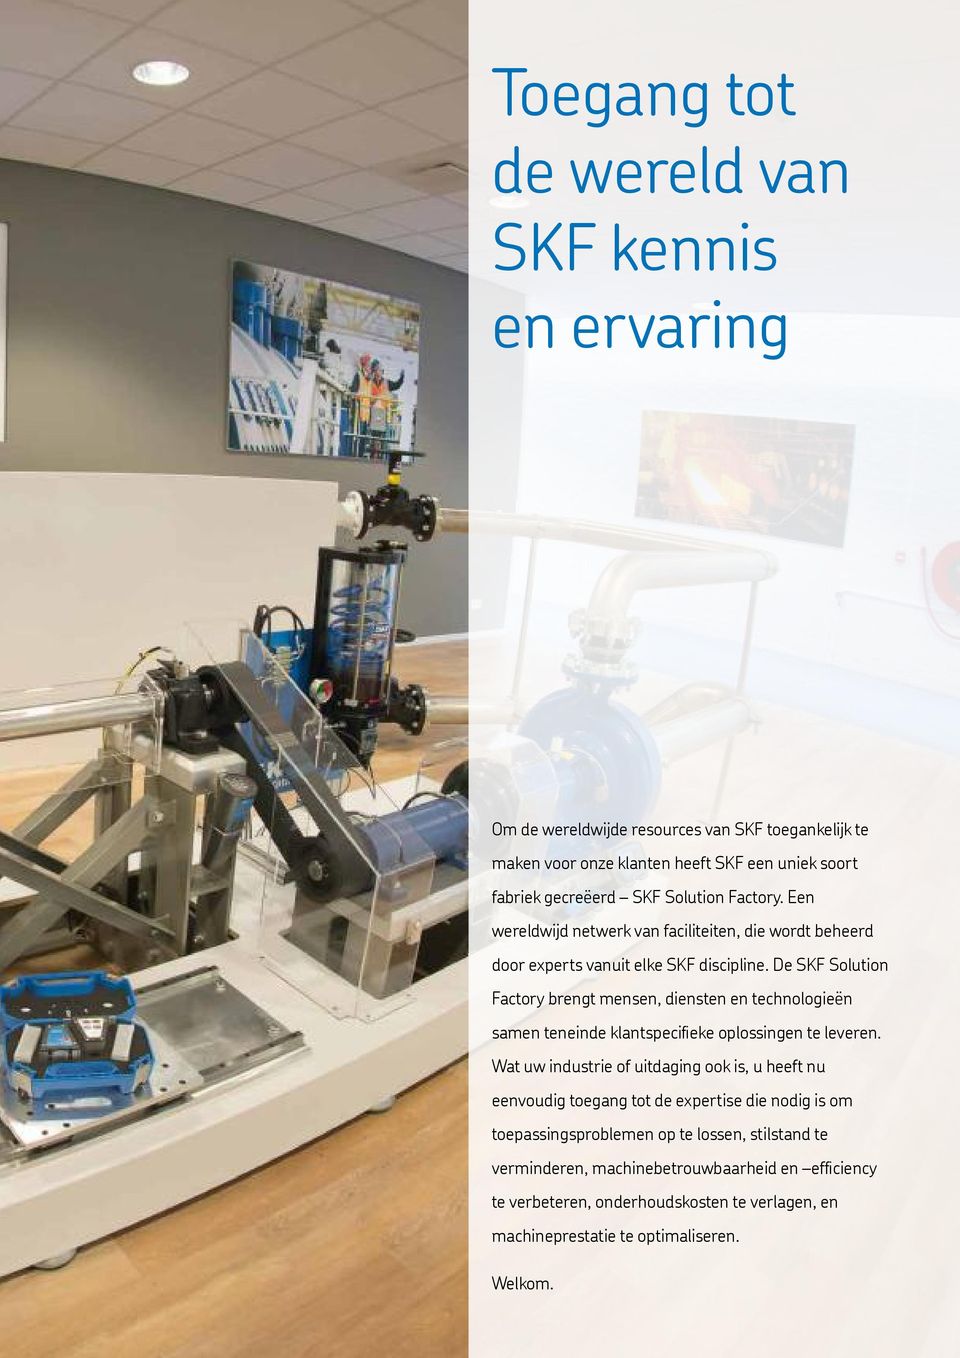 De SKF Solution Factory brengt mensen, diensten en technologieën samen teneinde klantspecifieke oplossingen te leveren.